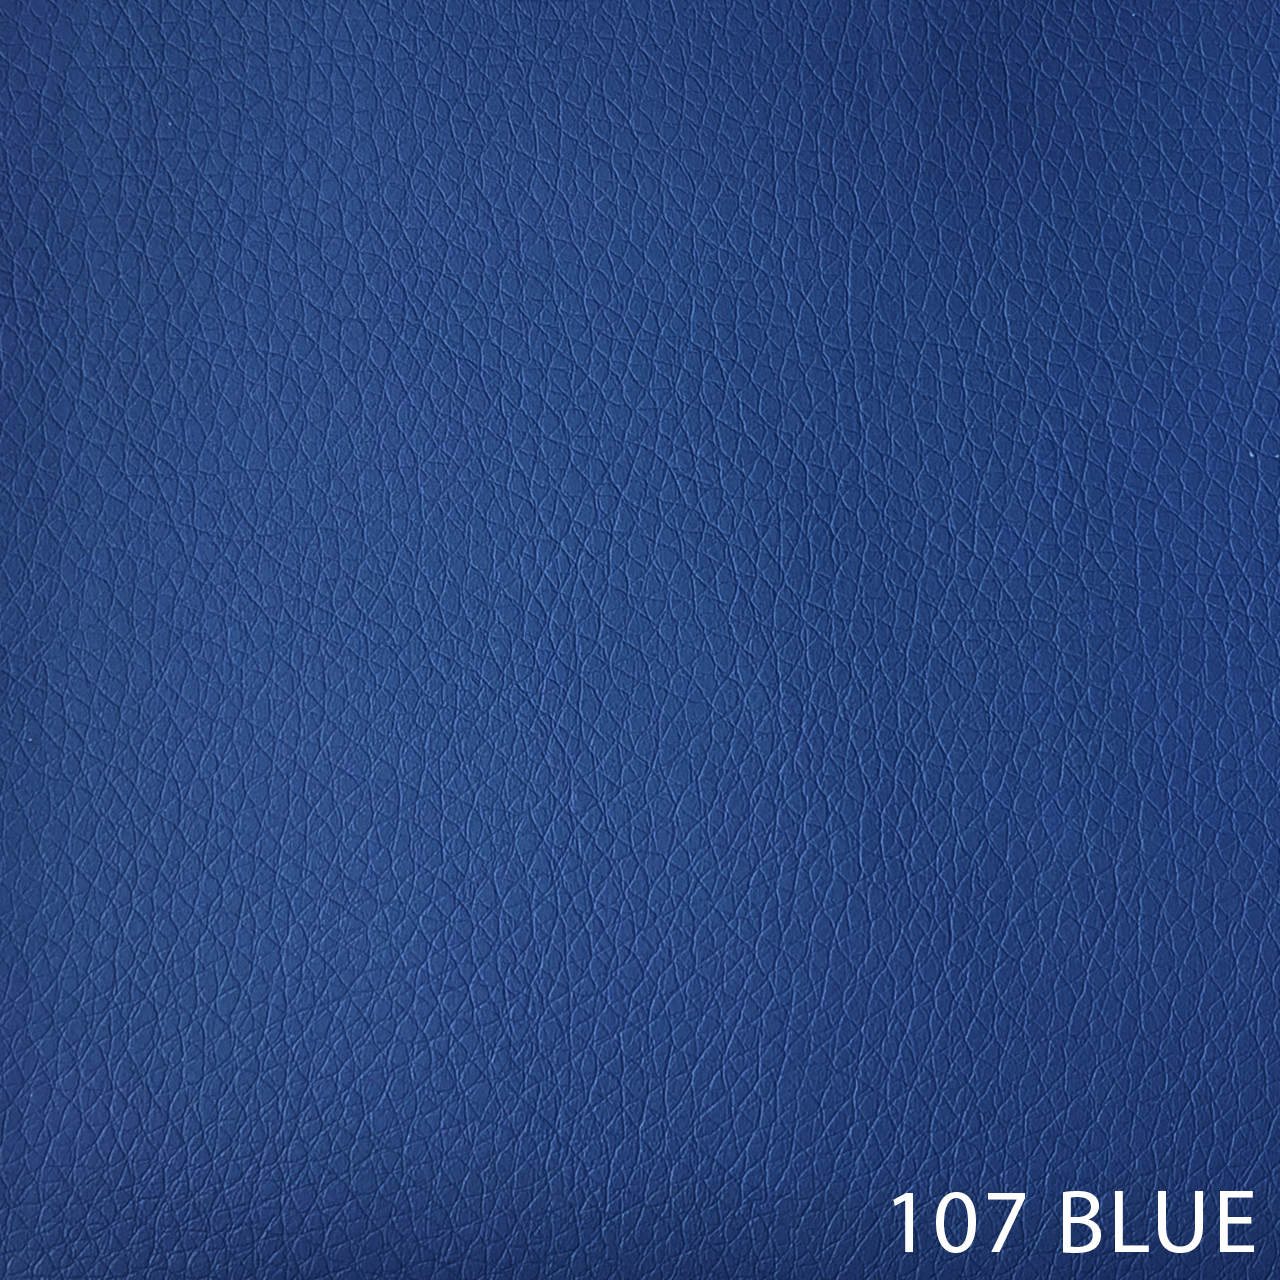 107 BLUE